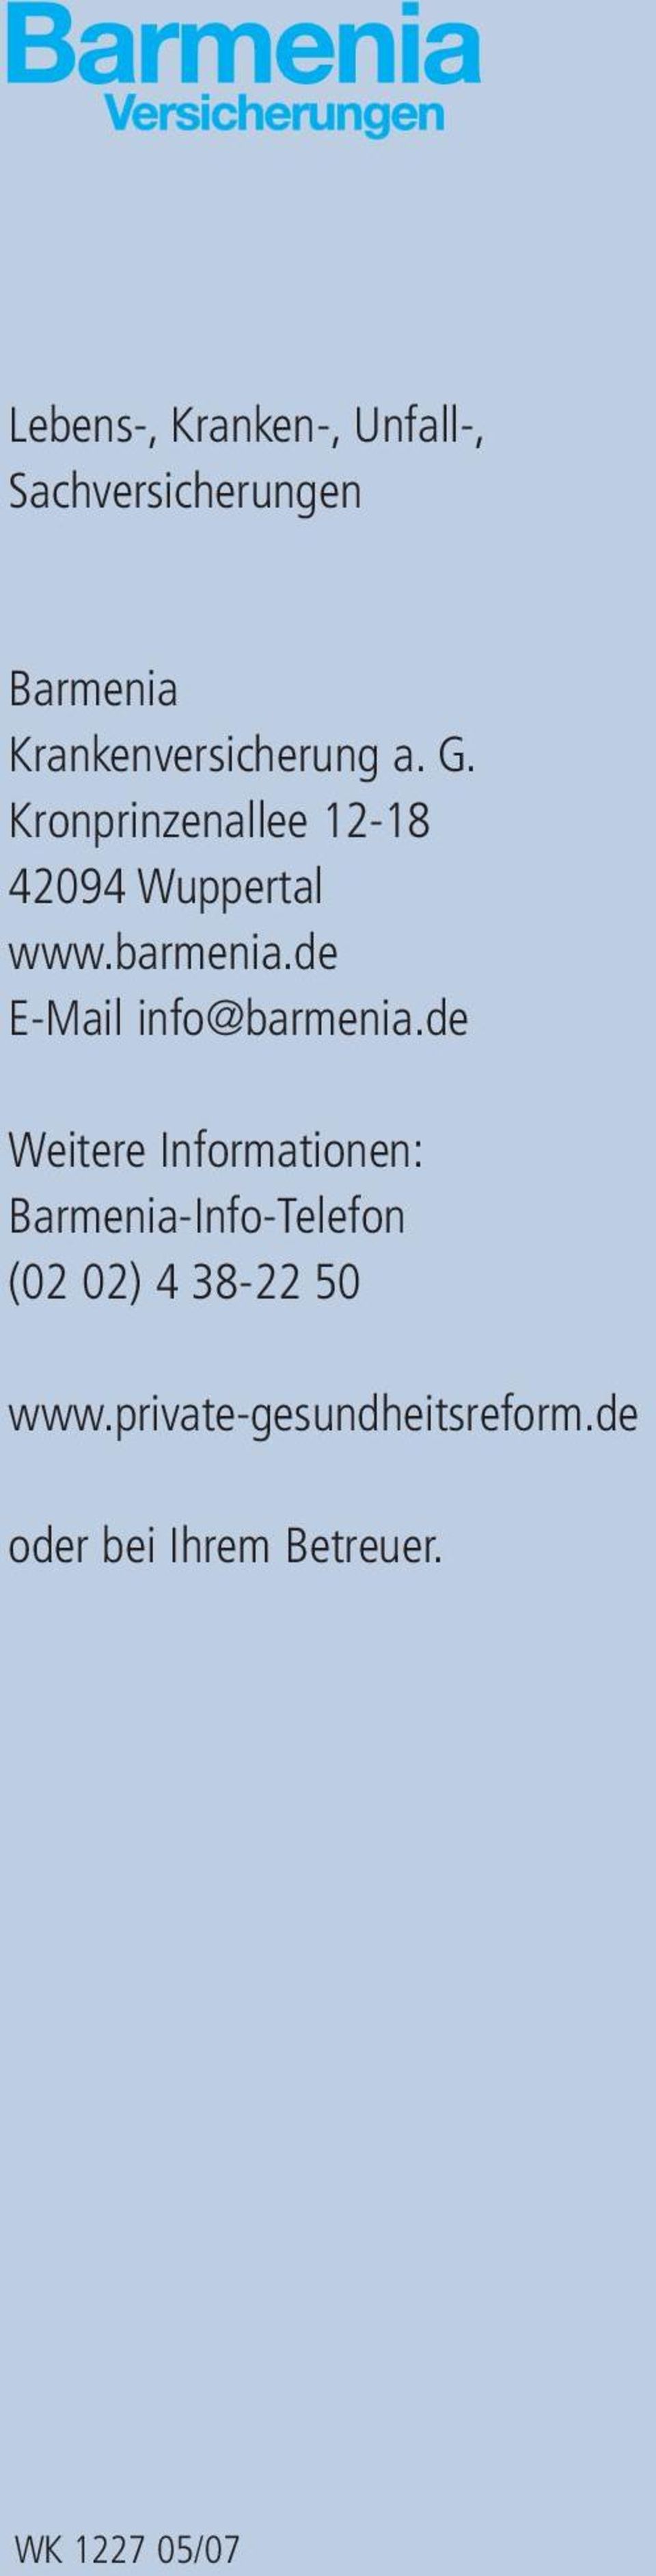 barmenia.de E-Mail info@barmenia.